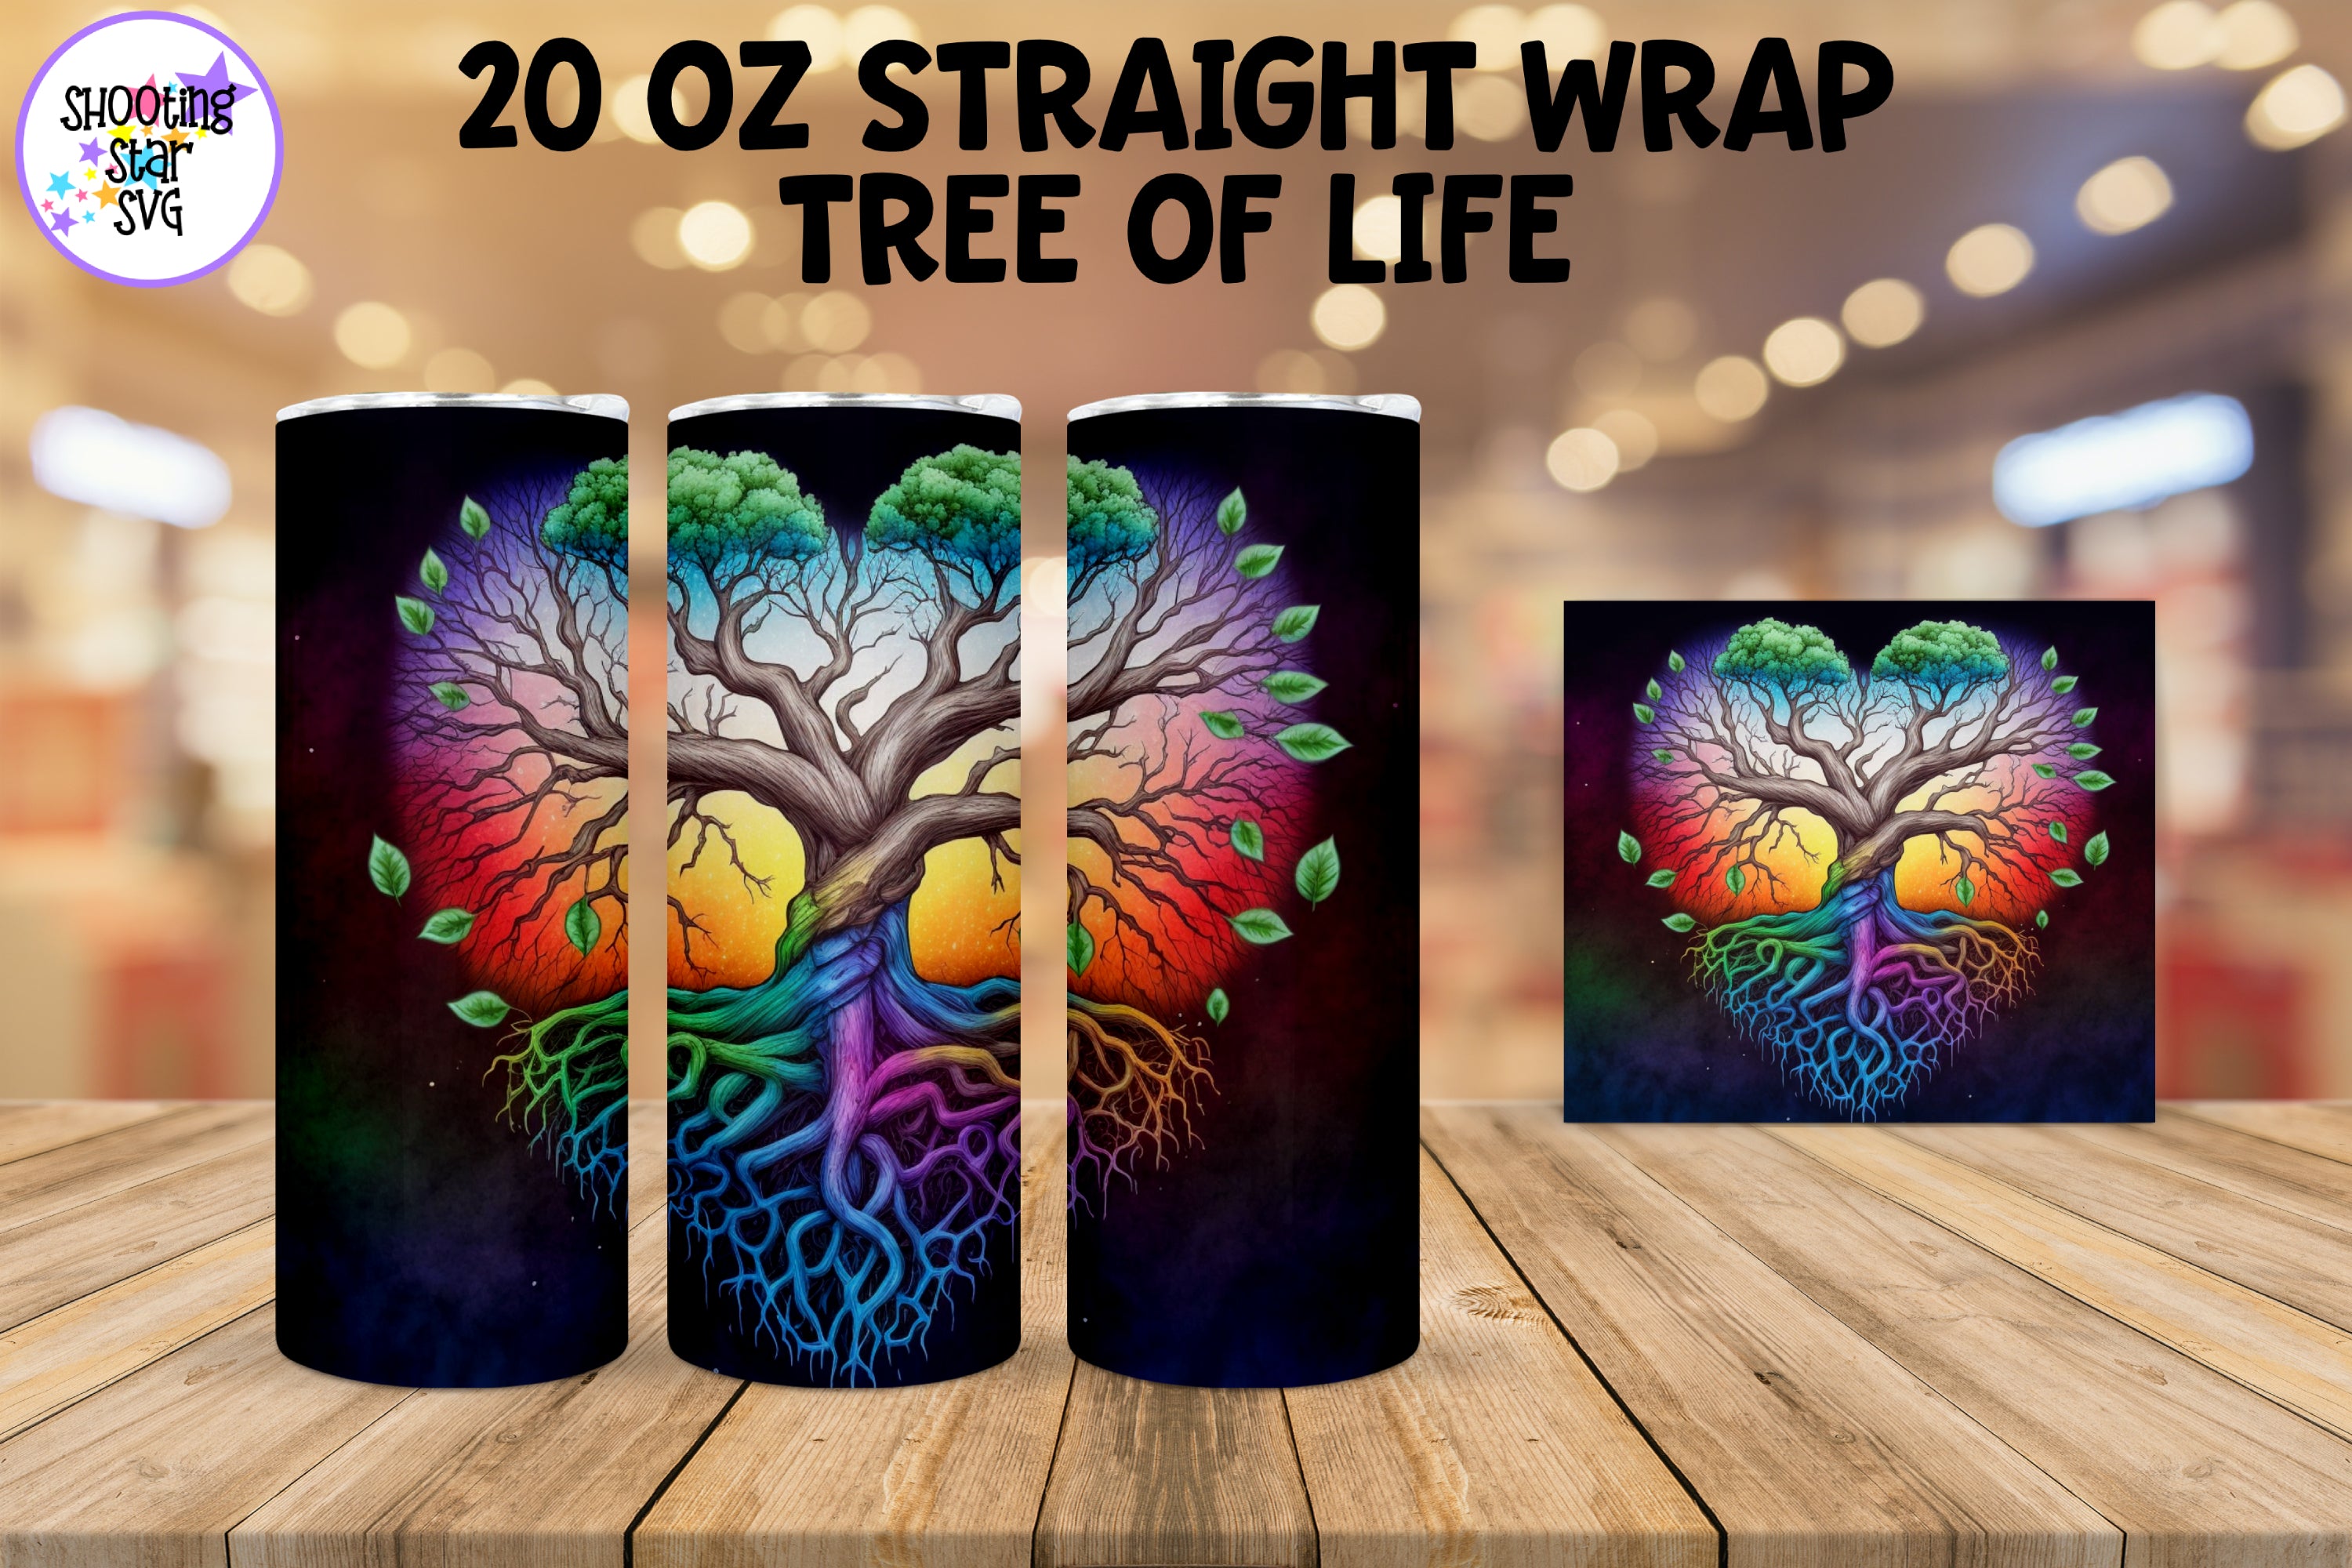 Tree of Life Sublimation Tumbler Wrap Bundle